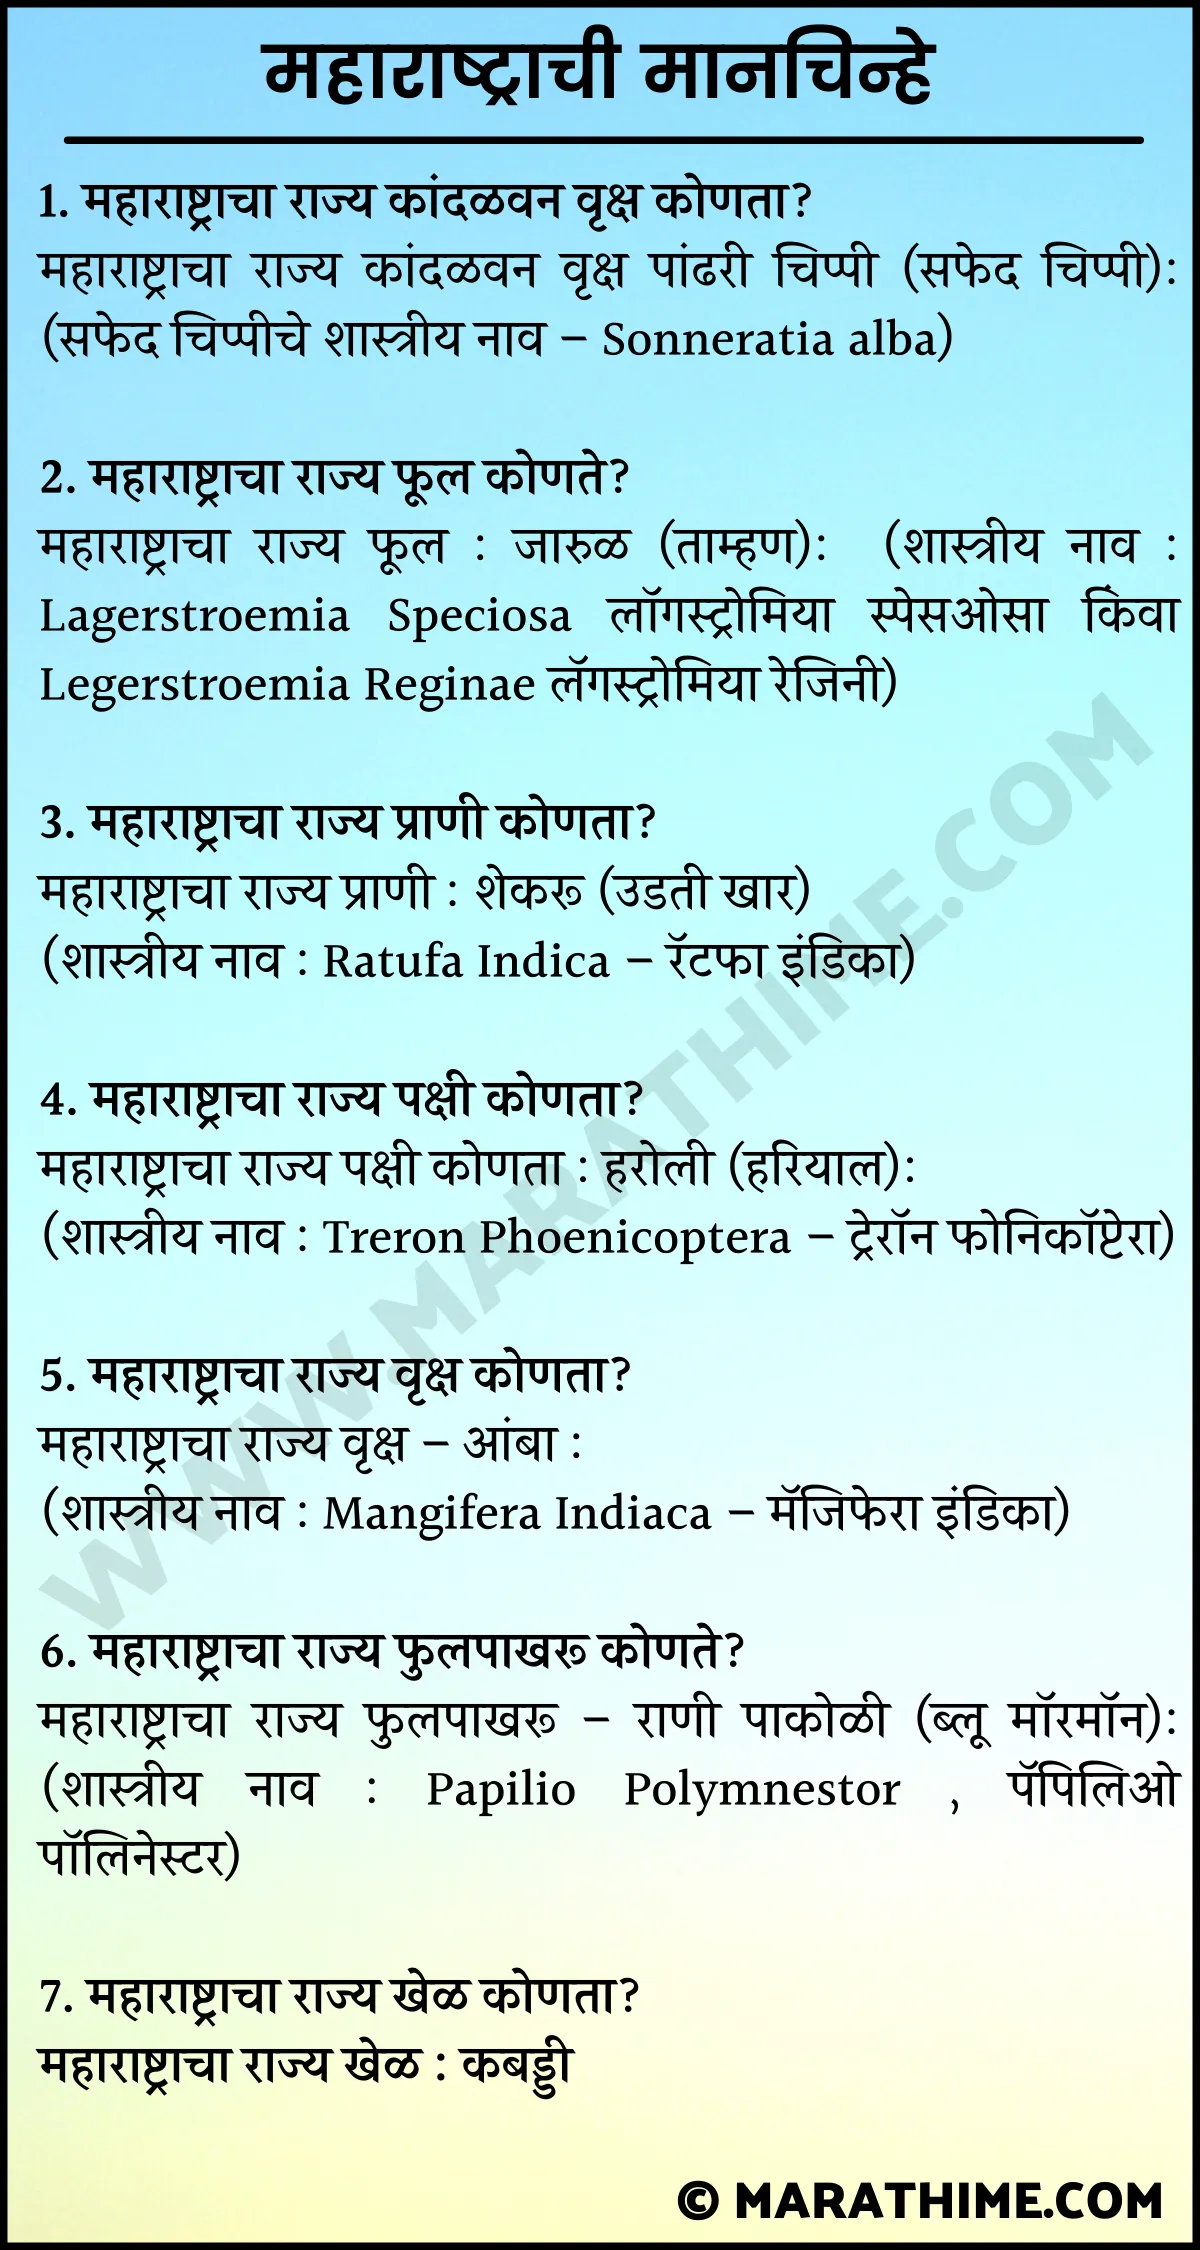 महाराष्ट्राची मानचिन्हे यादी